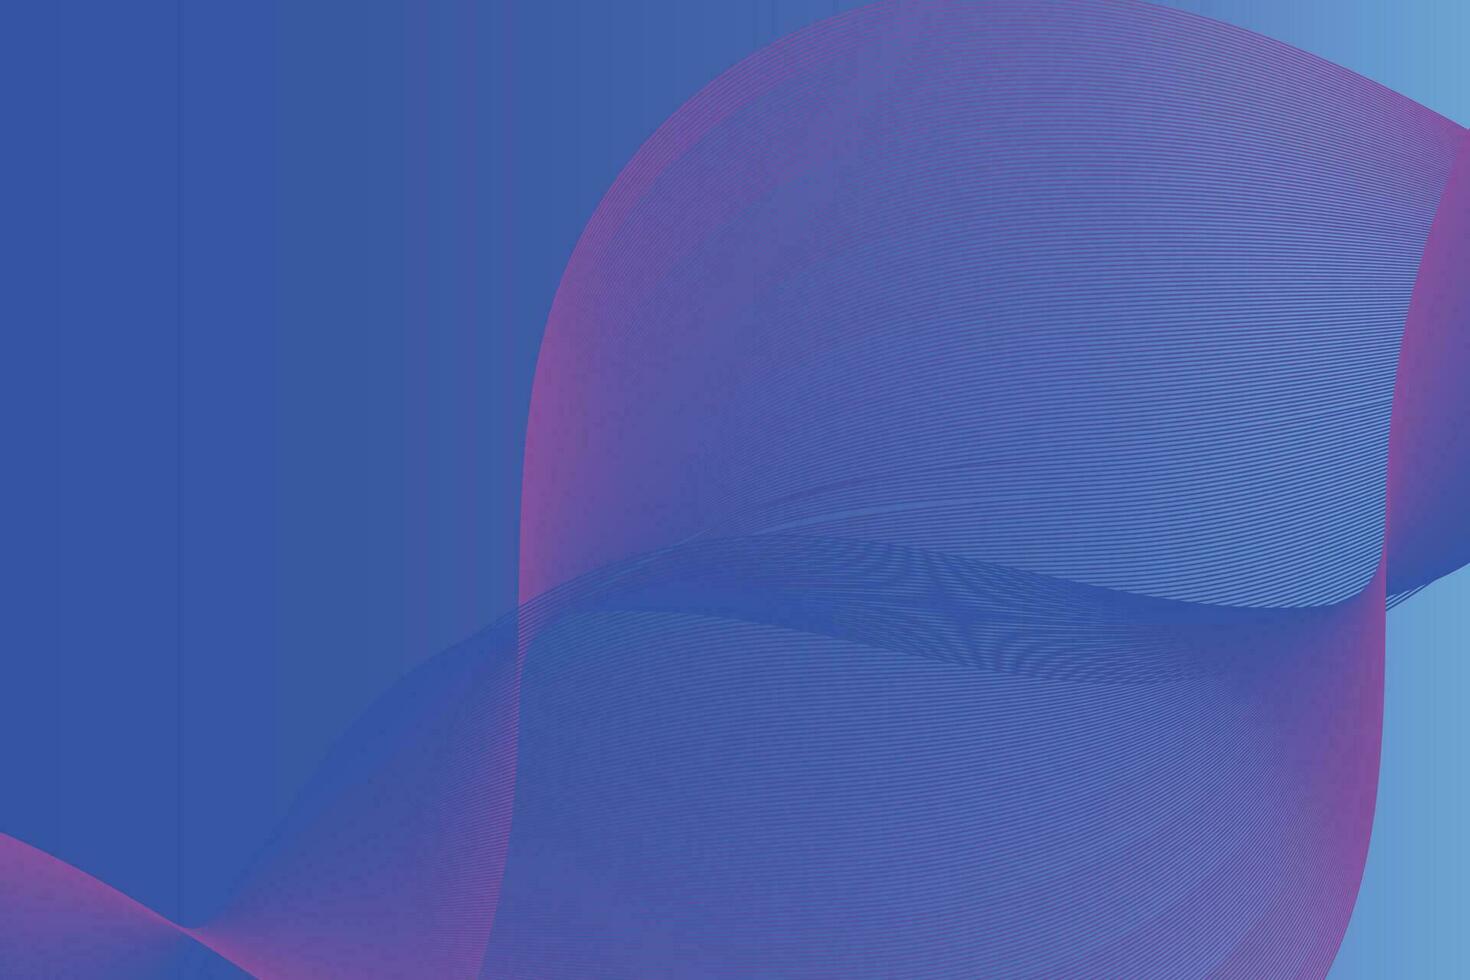 abstrato fundo, elegante azul onda redemoinhos fundo vetor